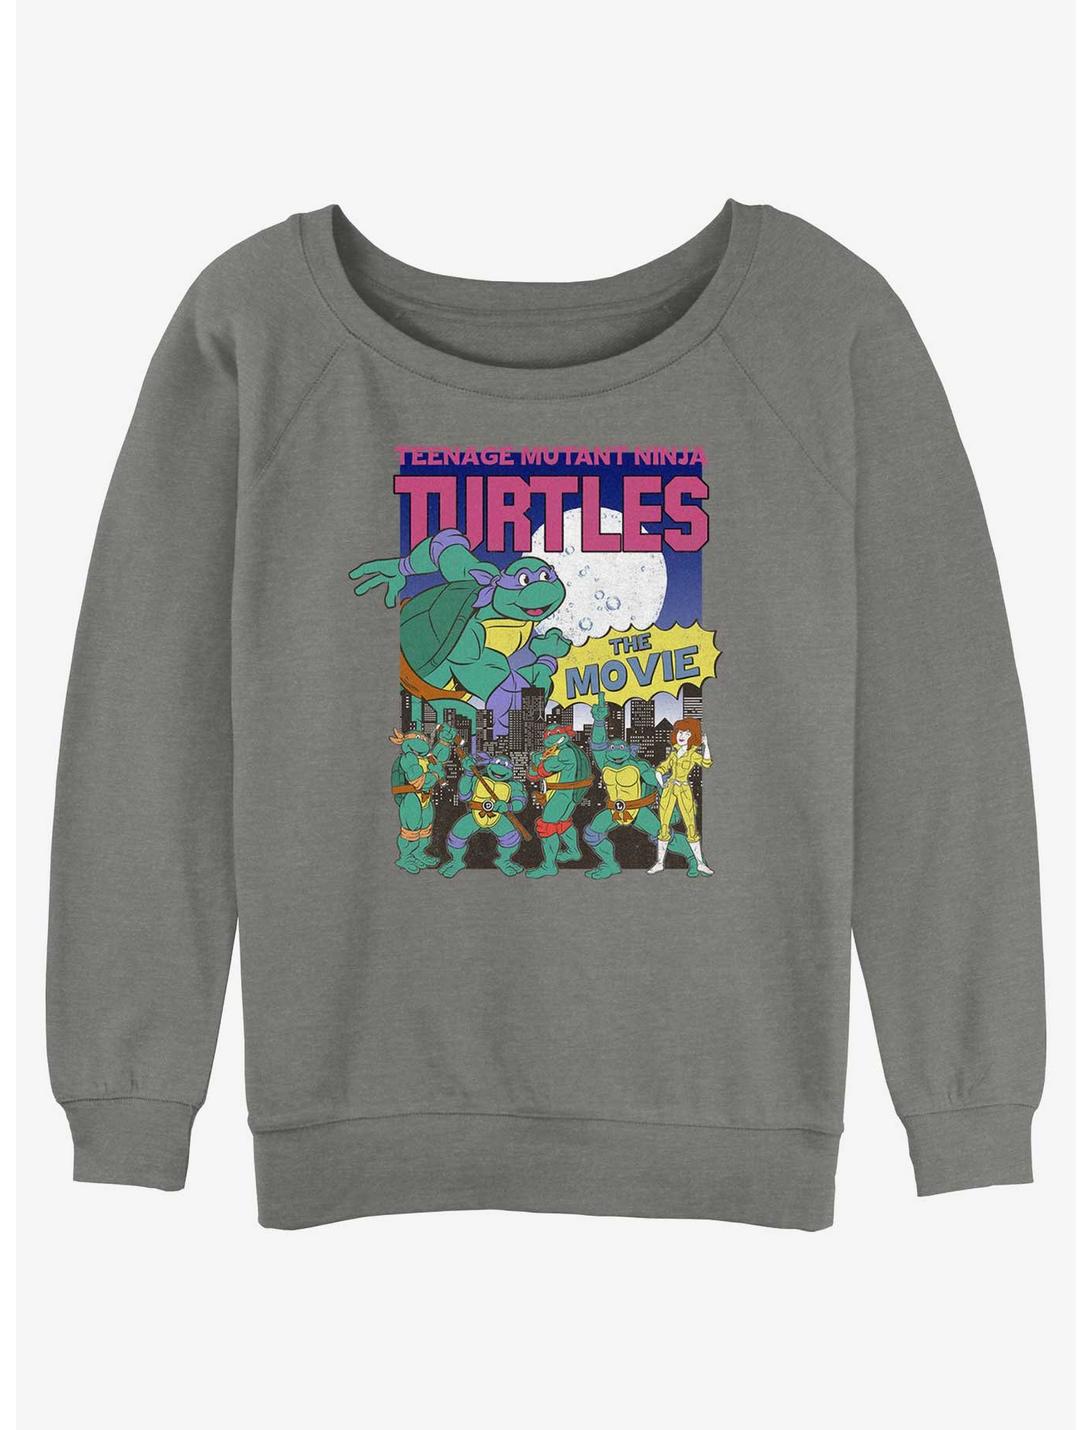 Teenage Mutant Ninja Turtles Vintage Turtles Poster Womens Slouchy Sweatshirt, GRAY HTR, hi-res